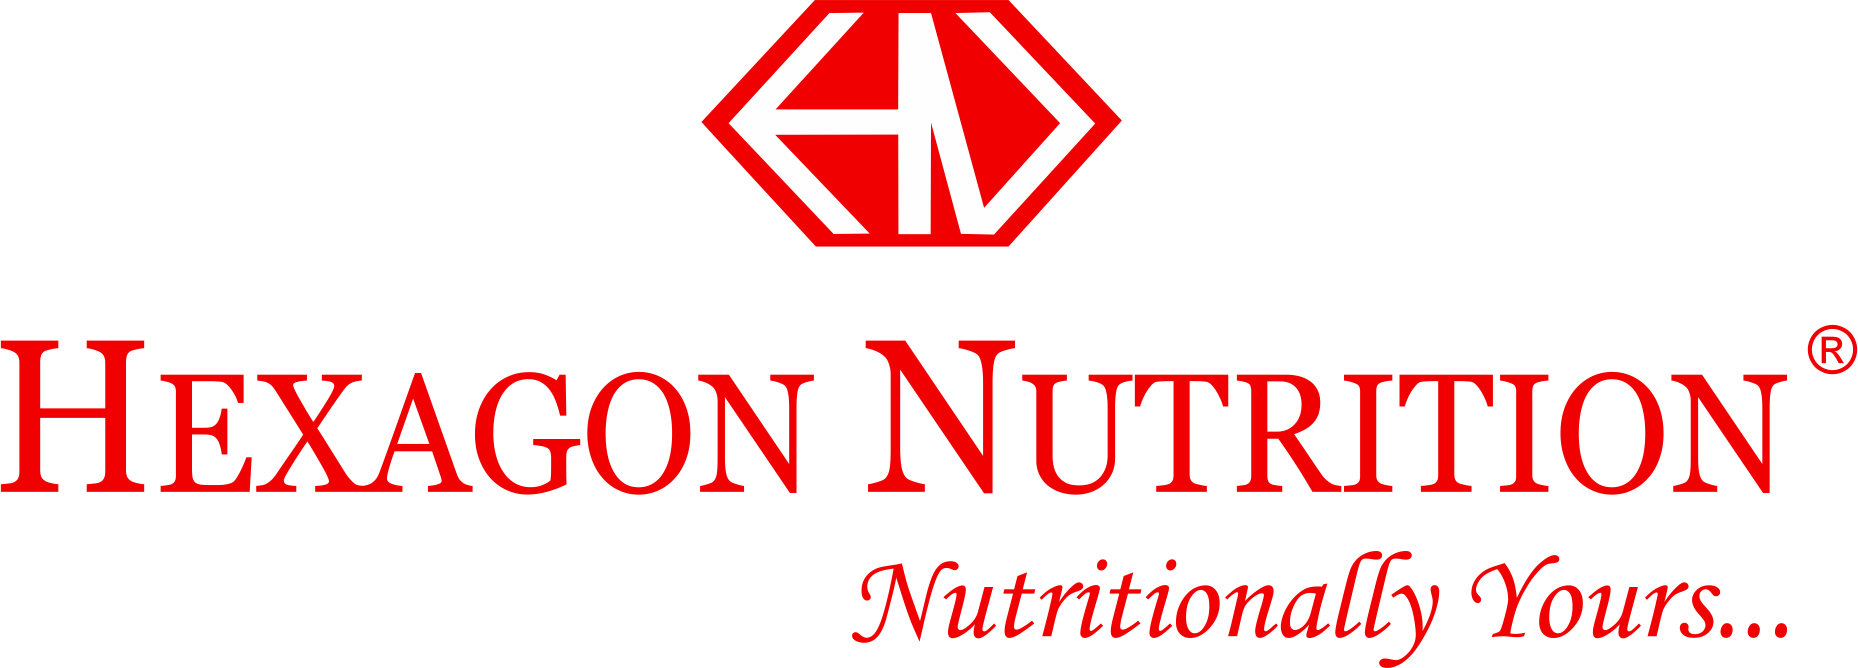 Hexagon Nutrition